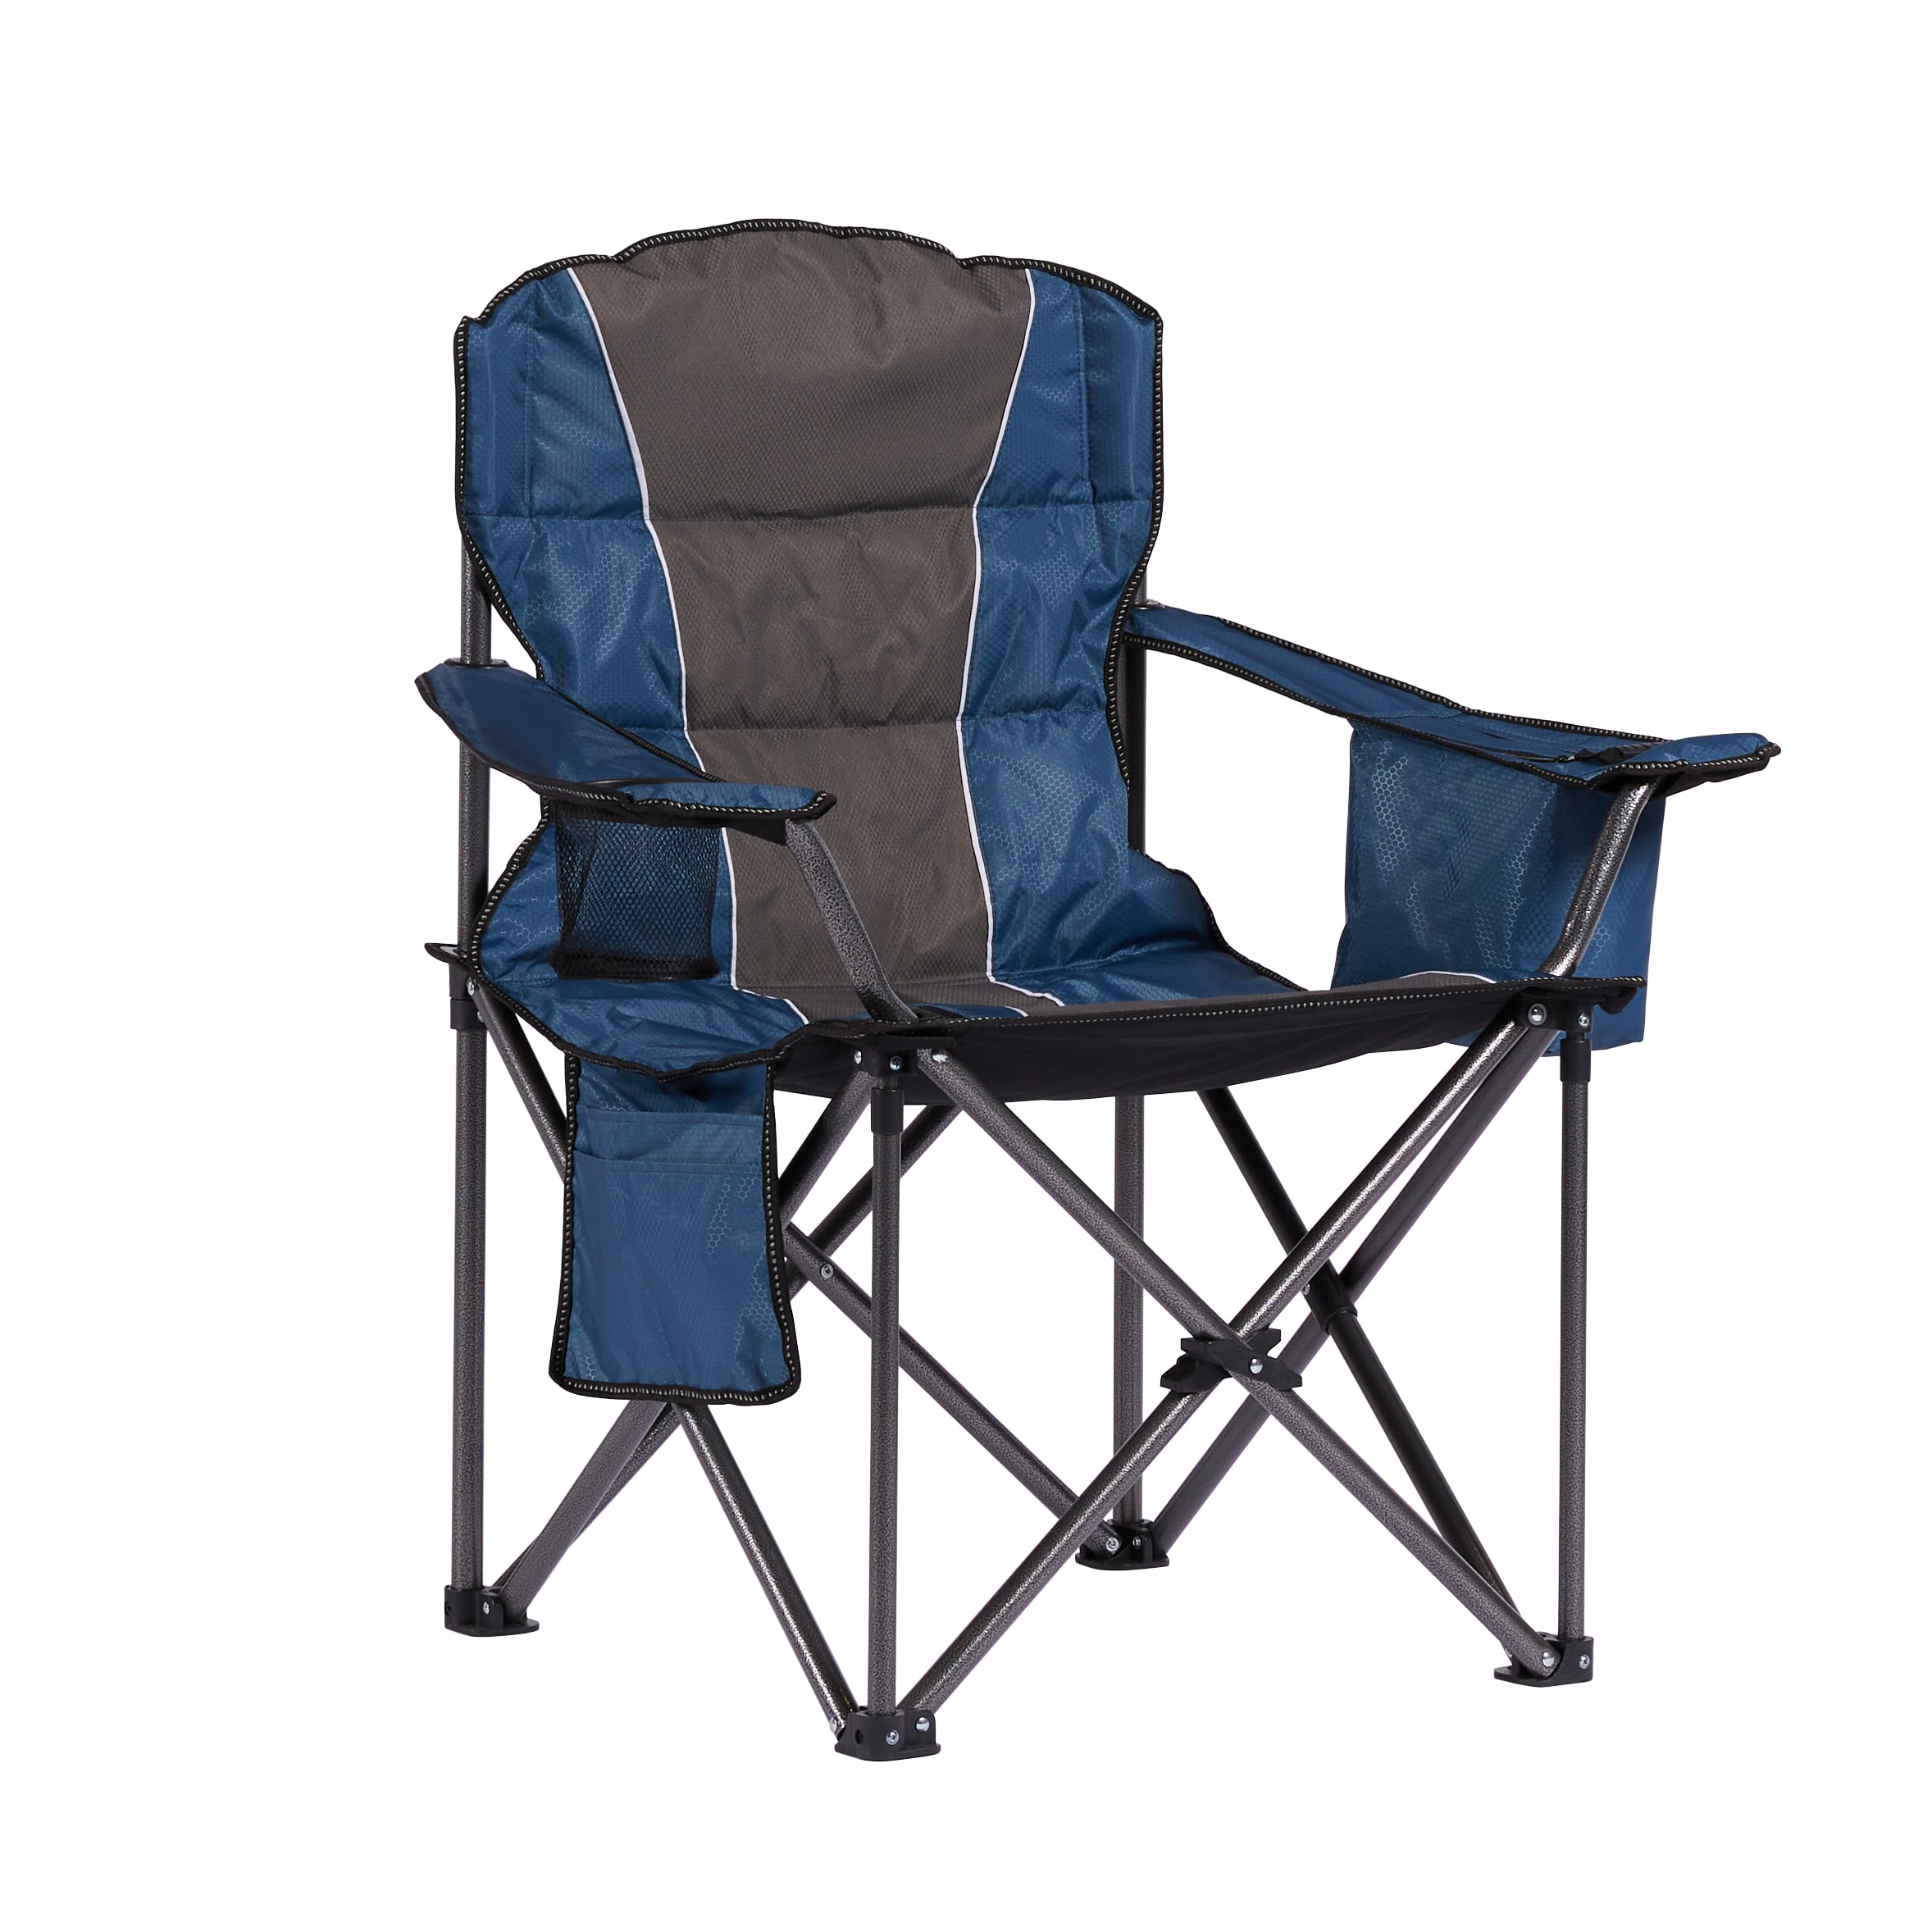 Camping Beach & Camping Chairs at